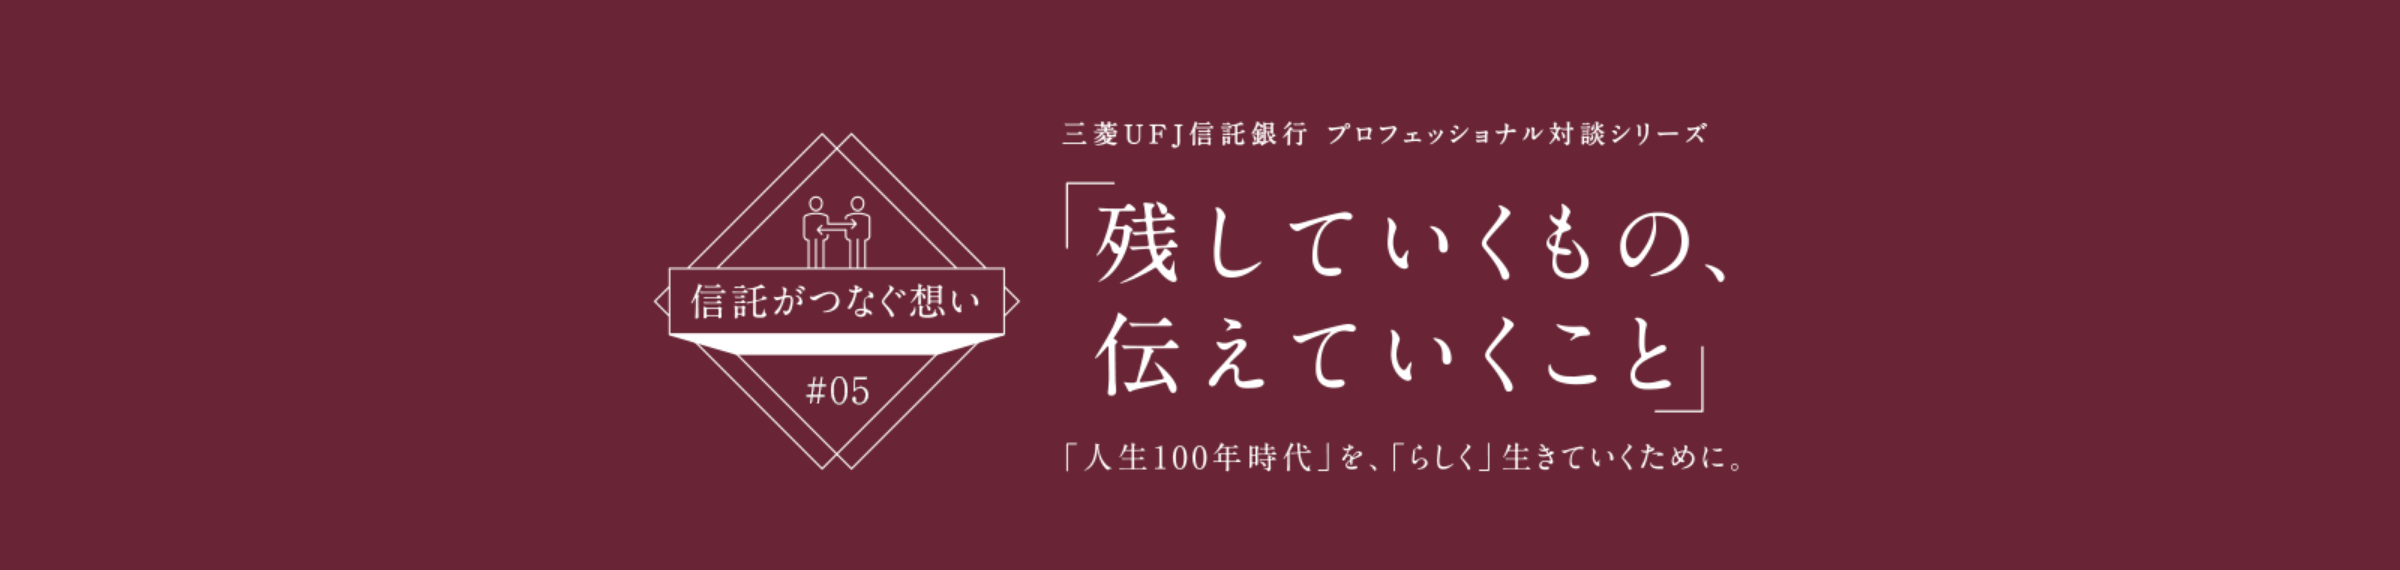 【信託がつなぐ想い #05】 三菱ＵＦＪ信託銀行 プロフェッショナル対談シリーズ 「残していくもの、伝えていくこと」 「人生100年時代」を、「らしく」生きていくために。